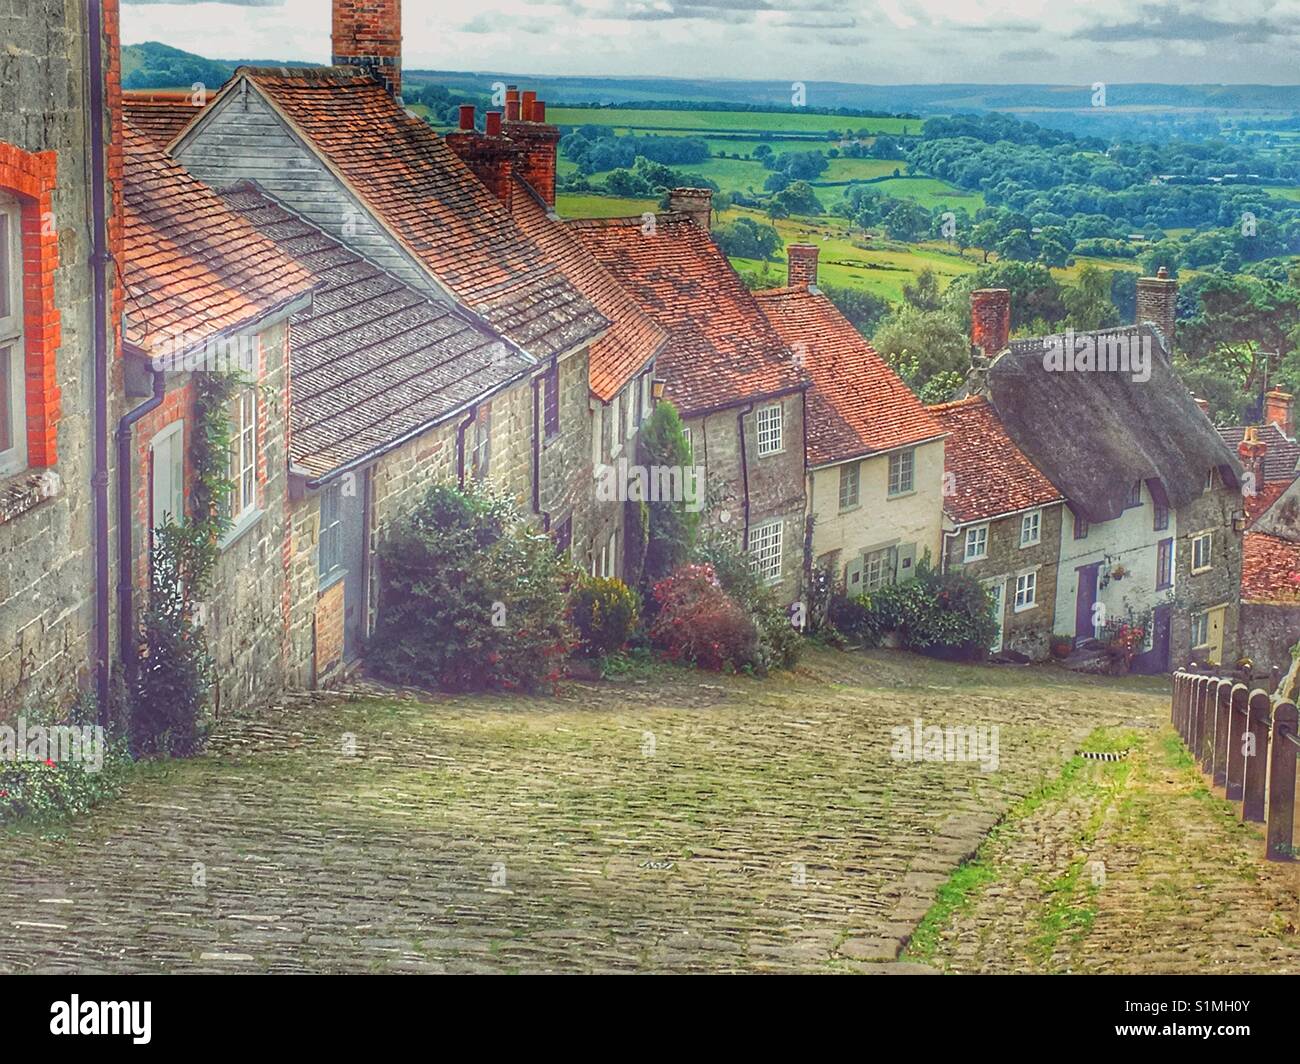 Gold Hill, bekannt als die Lage der Hovis Brot Anzeige. Shaftesbury, Dorset, England Stockfoto